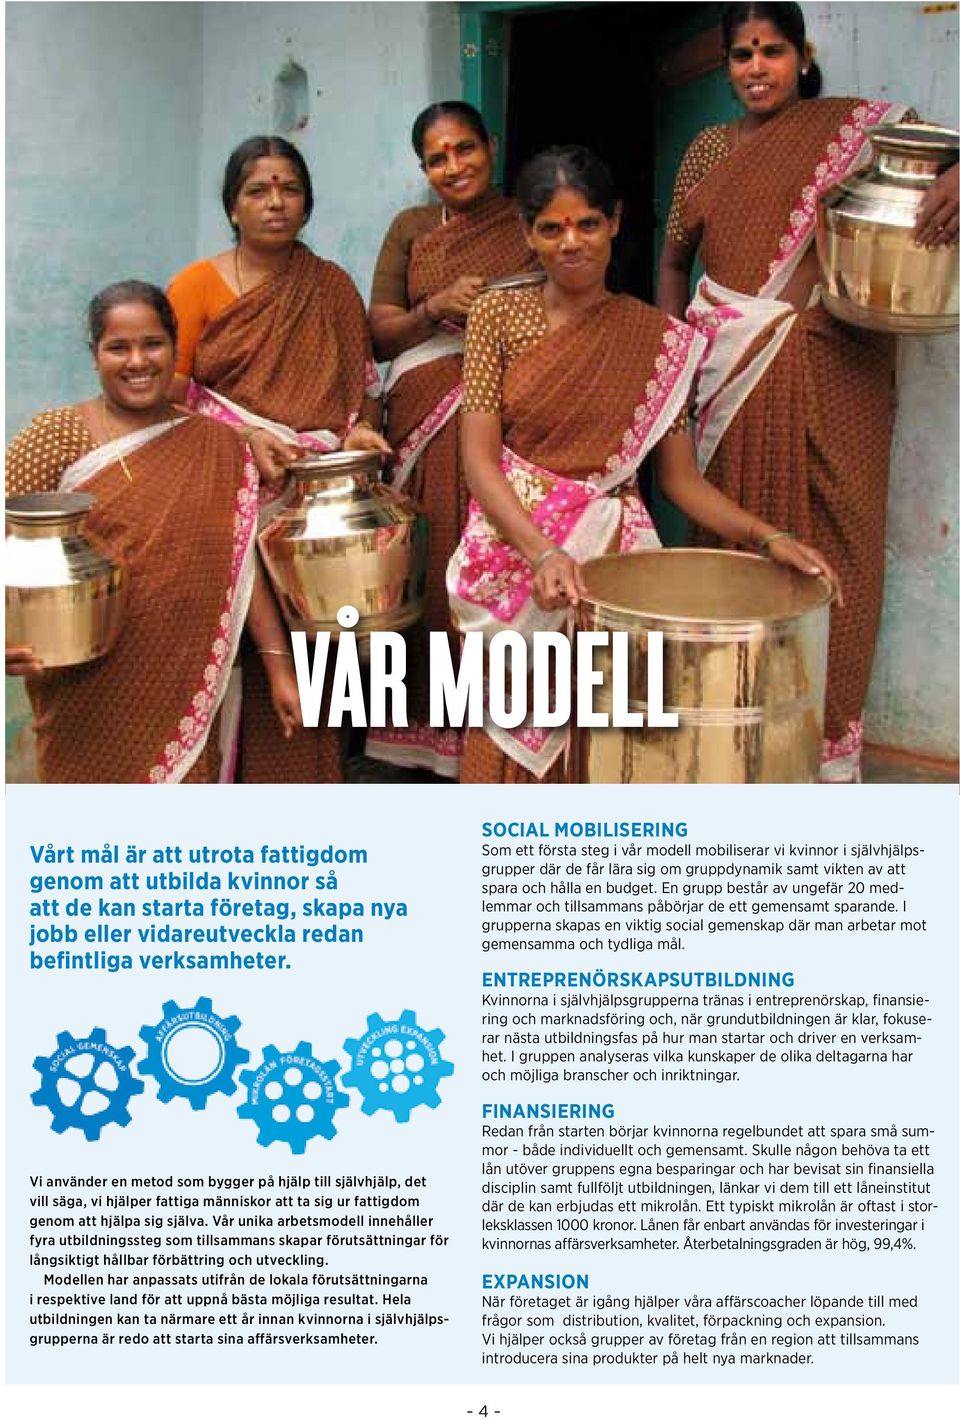 Vår unika arbetsmodell innehåller fyra utbildningssteg som tillsammans skapar förutsättningar för långsiktigt hållbar förbättring och utveckling.